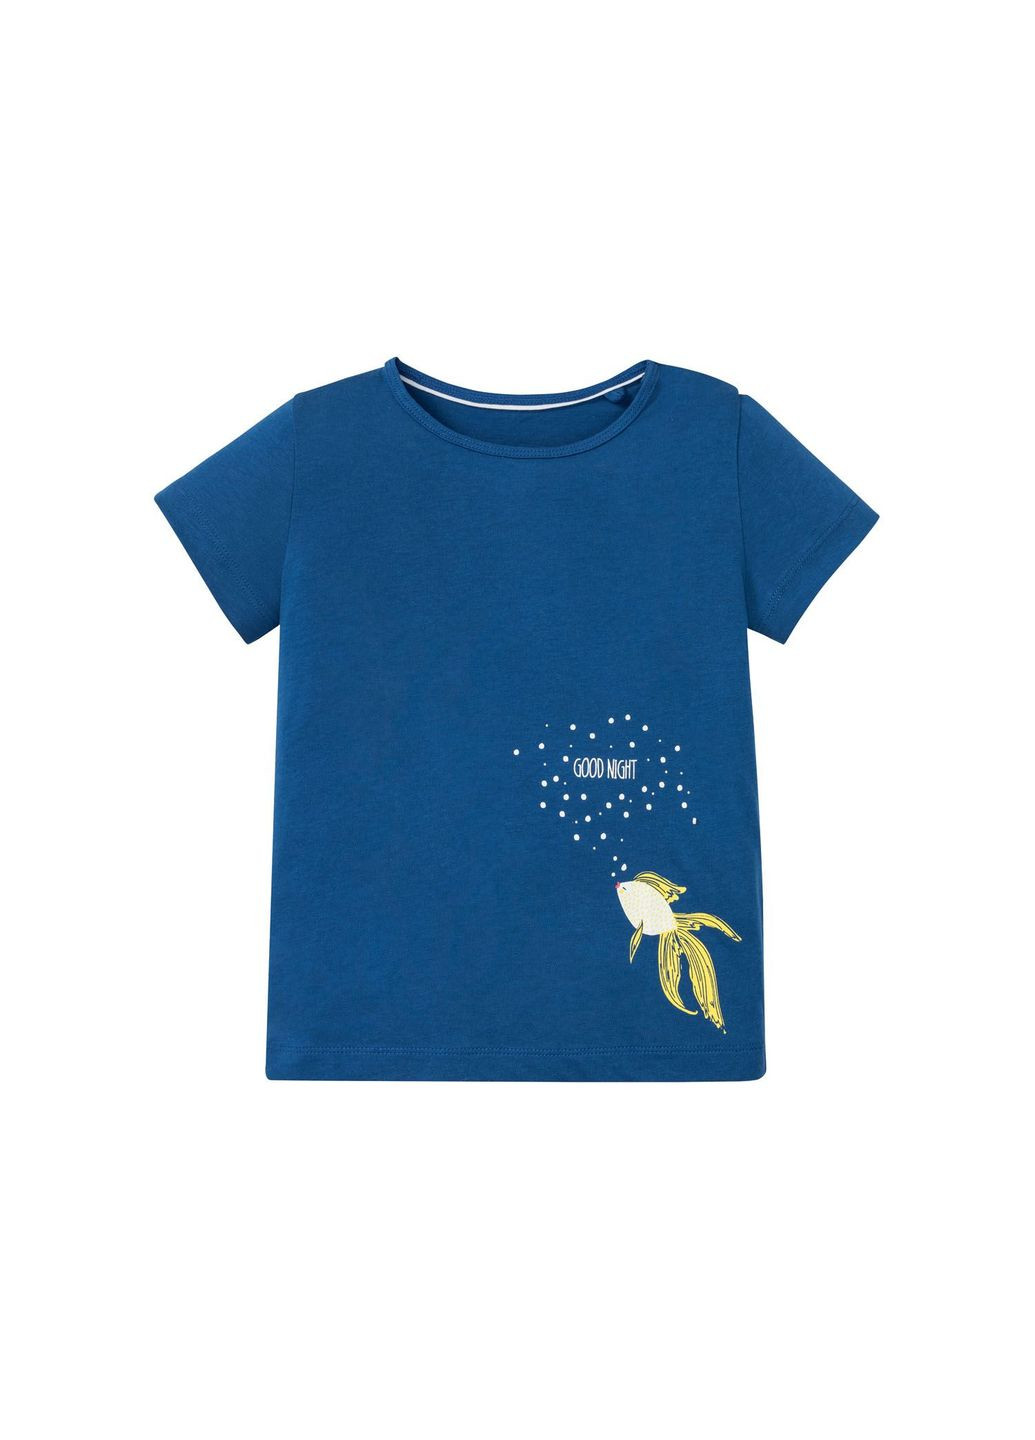 Синя піжама (футболка і шорти) для дівчинки 349605-н синій Lupilu